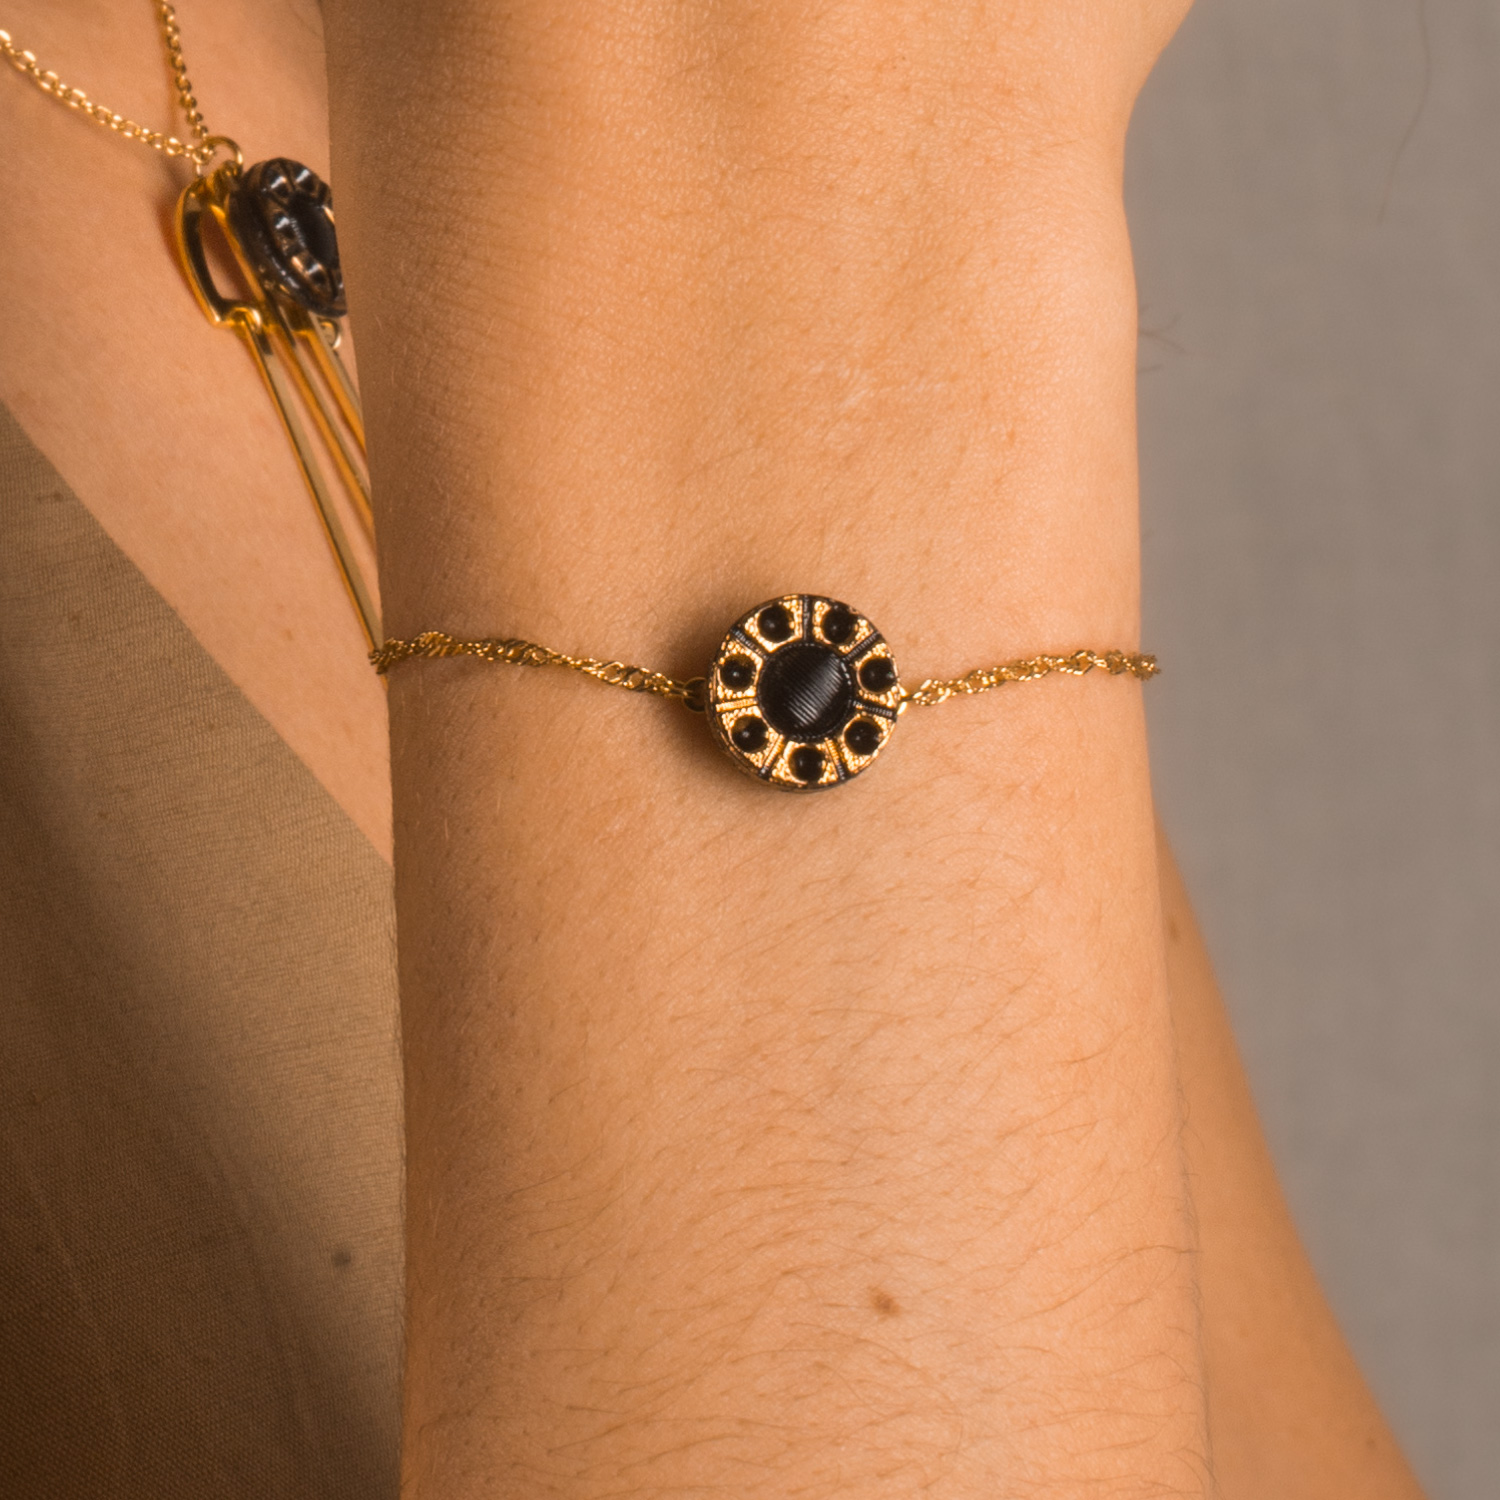 assuna-etoile-bracelet-chaine-simple-bouton-ancien-noa-look-01-web